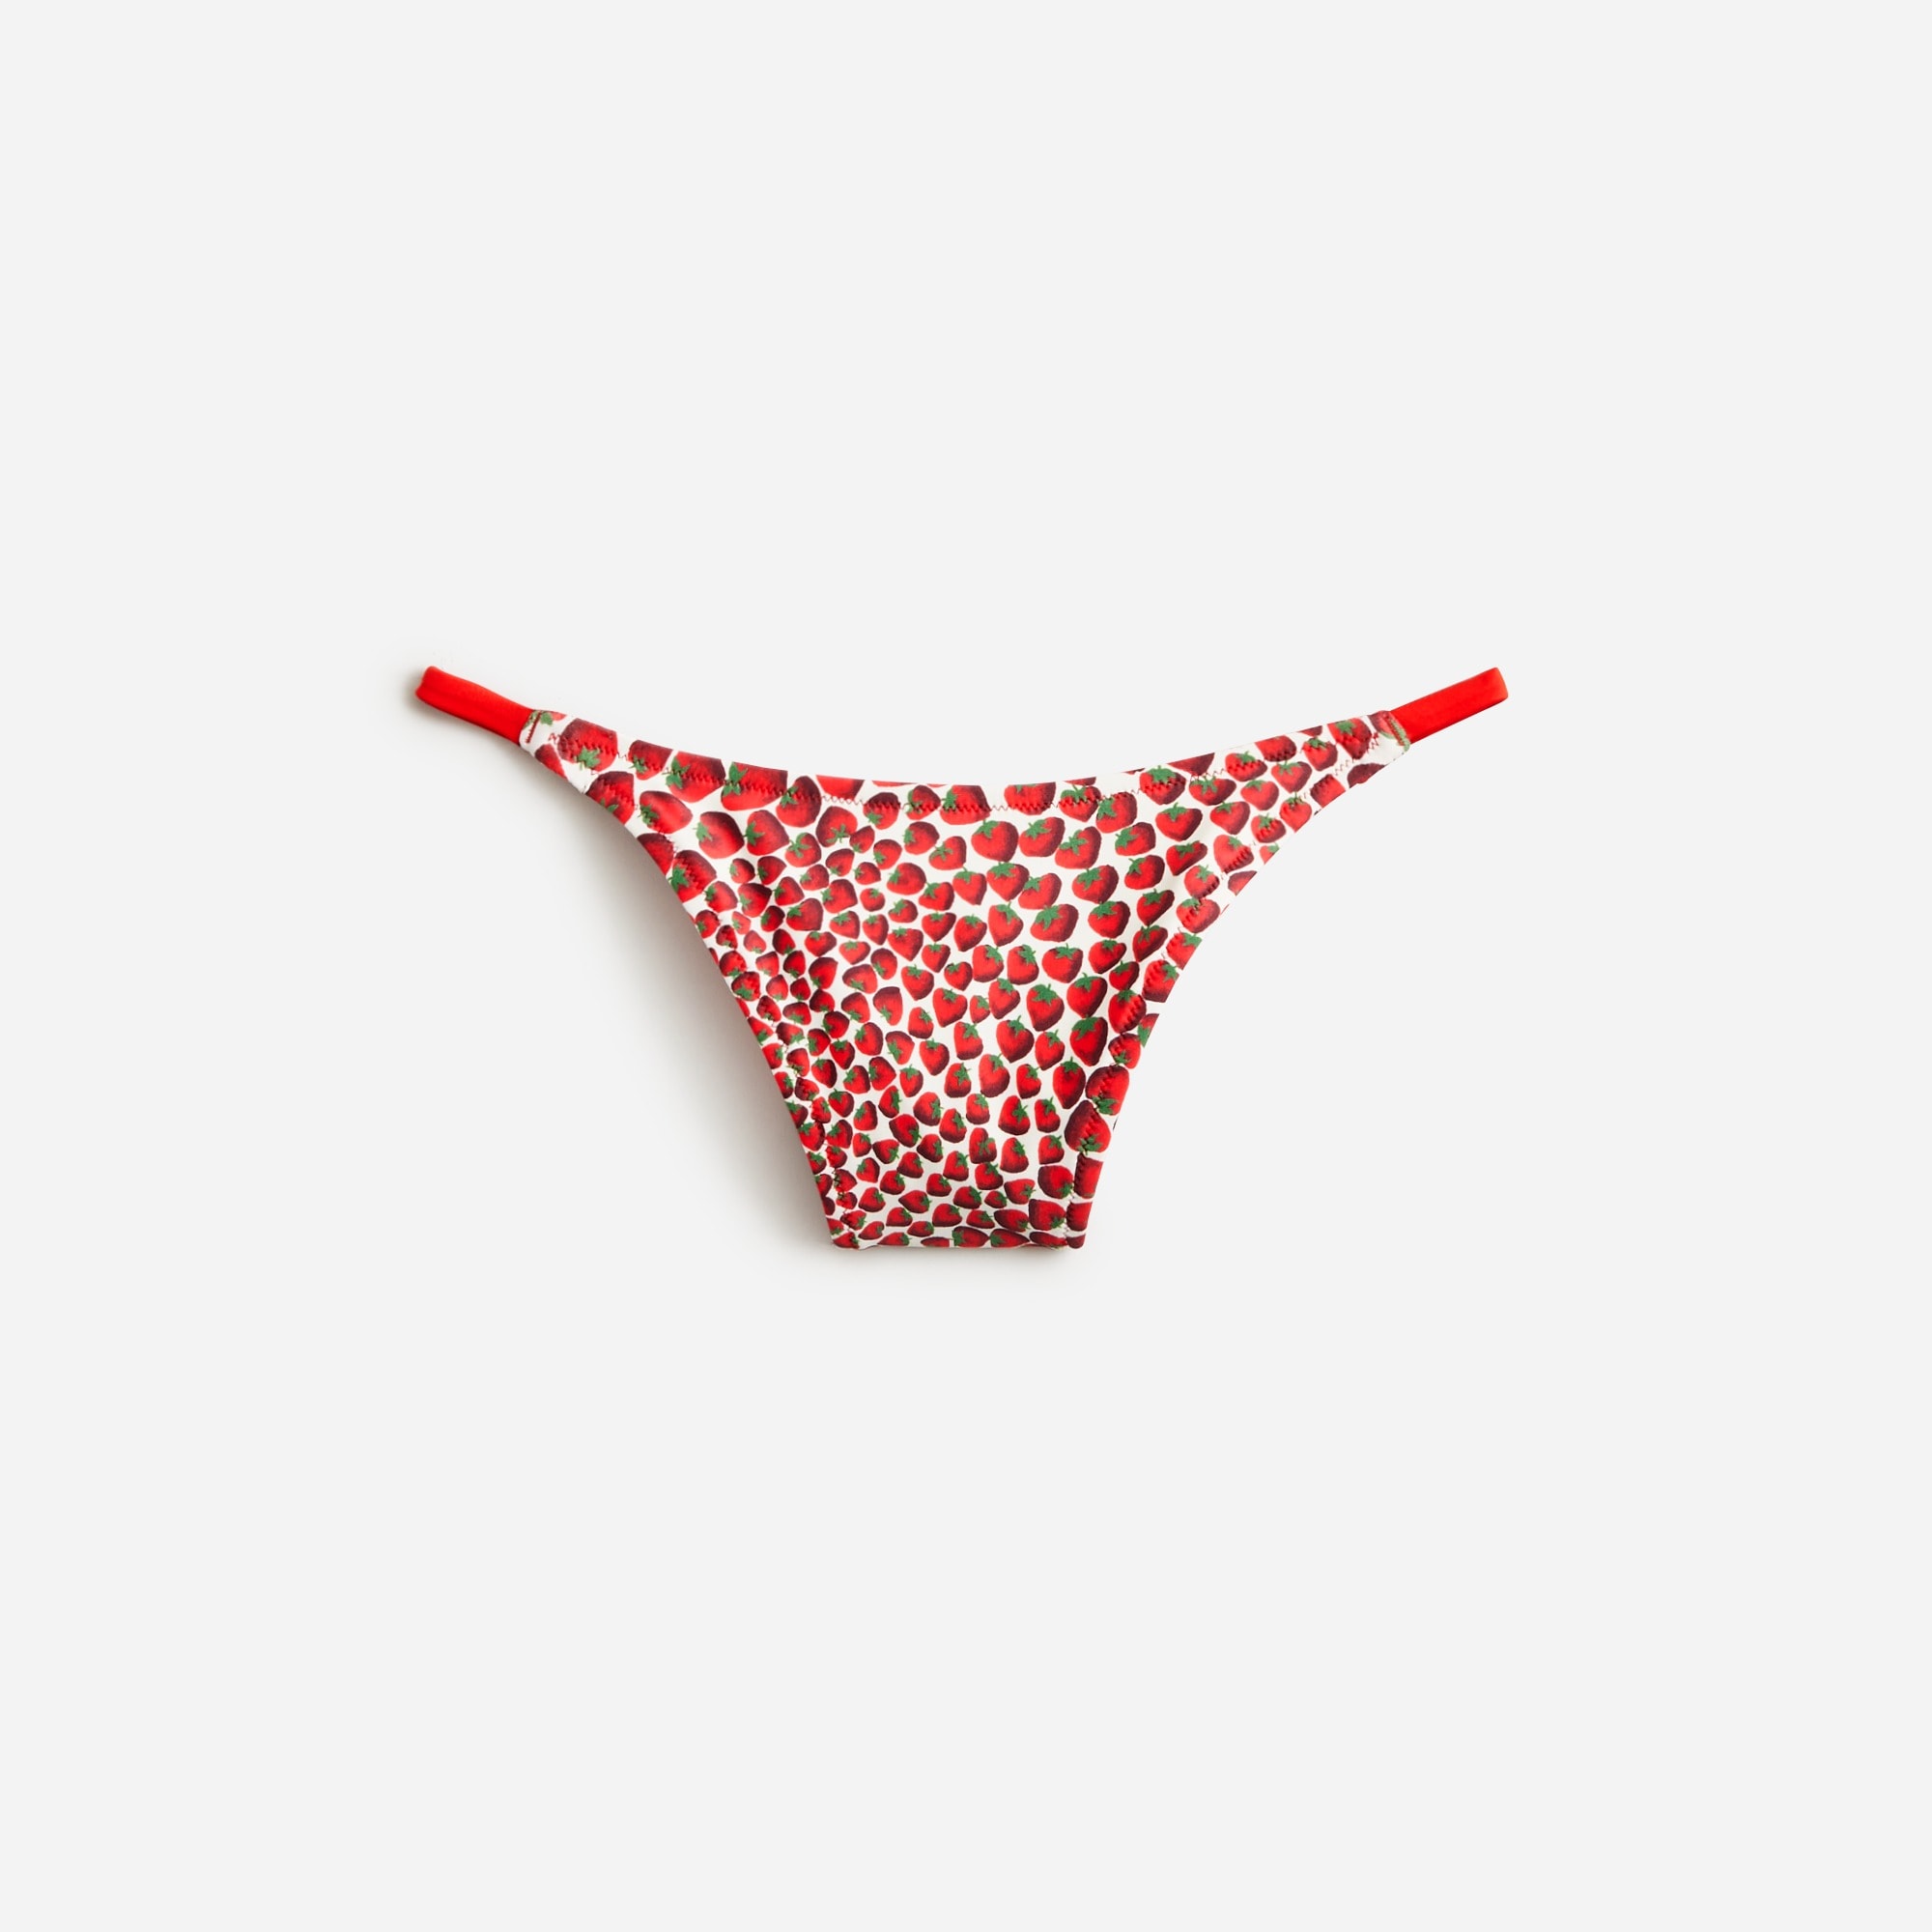  '90s no-tie string bikini bottom in reversible print